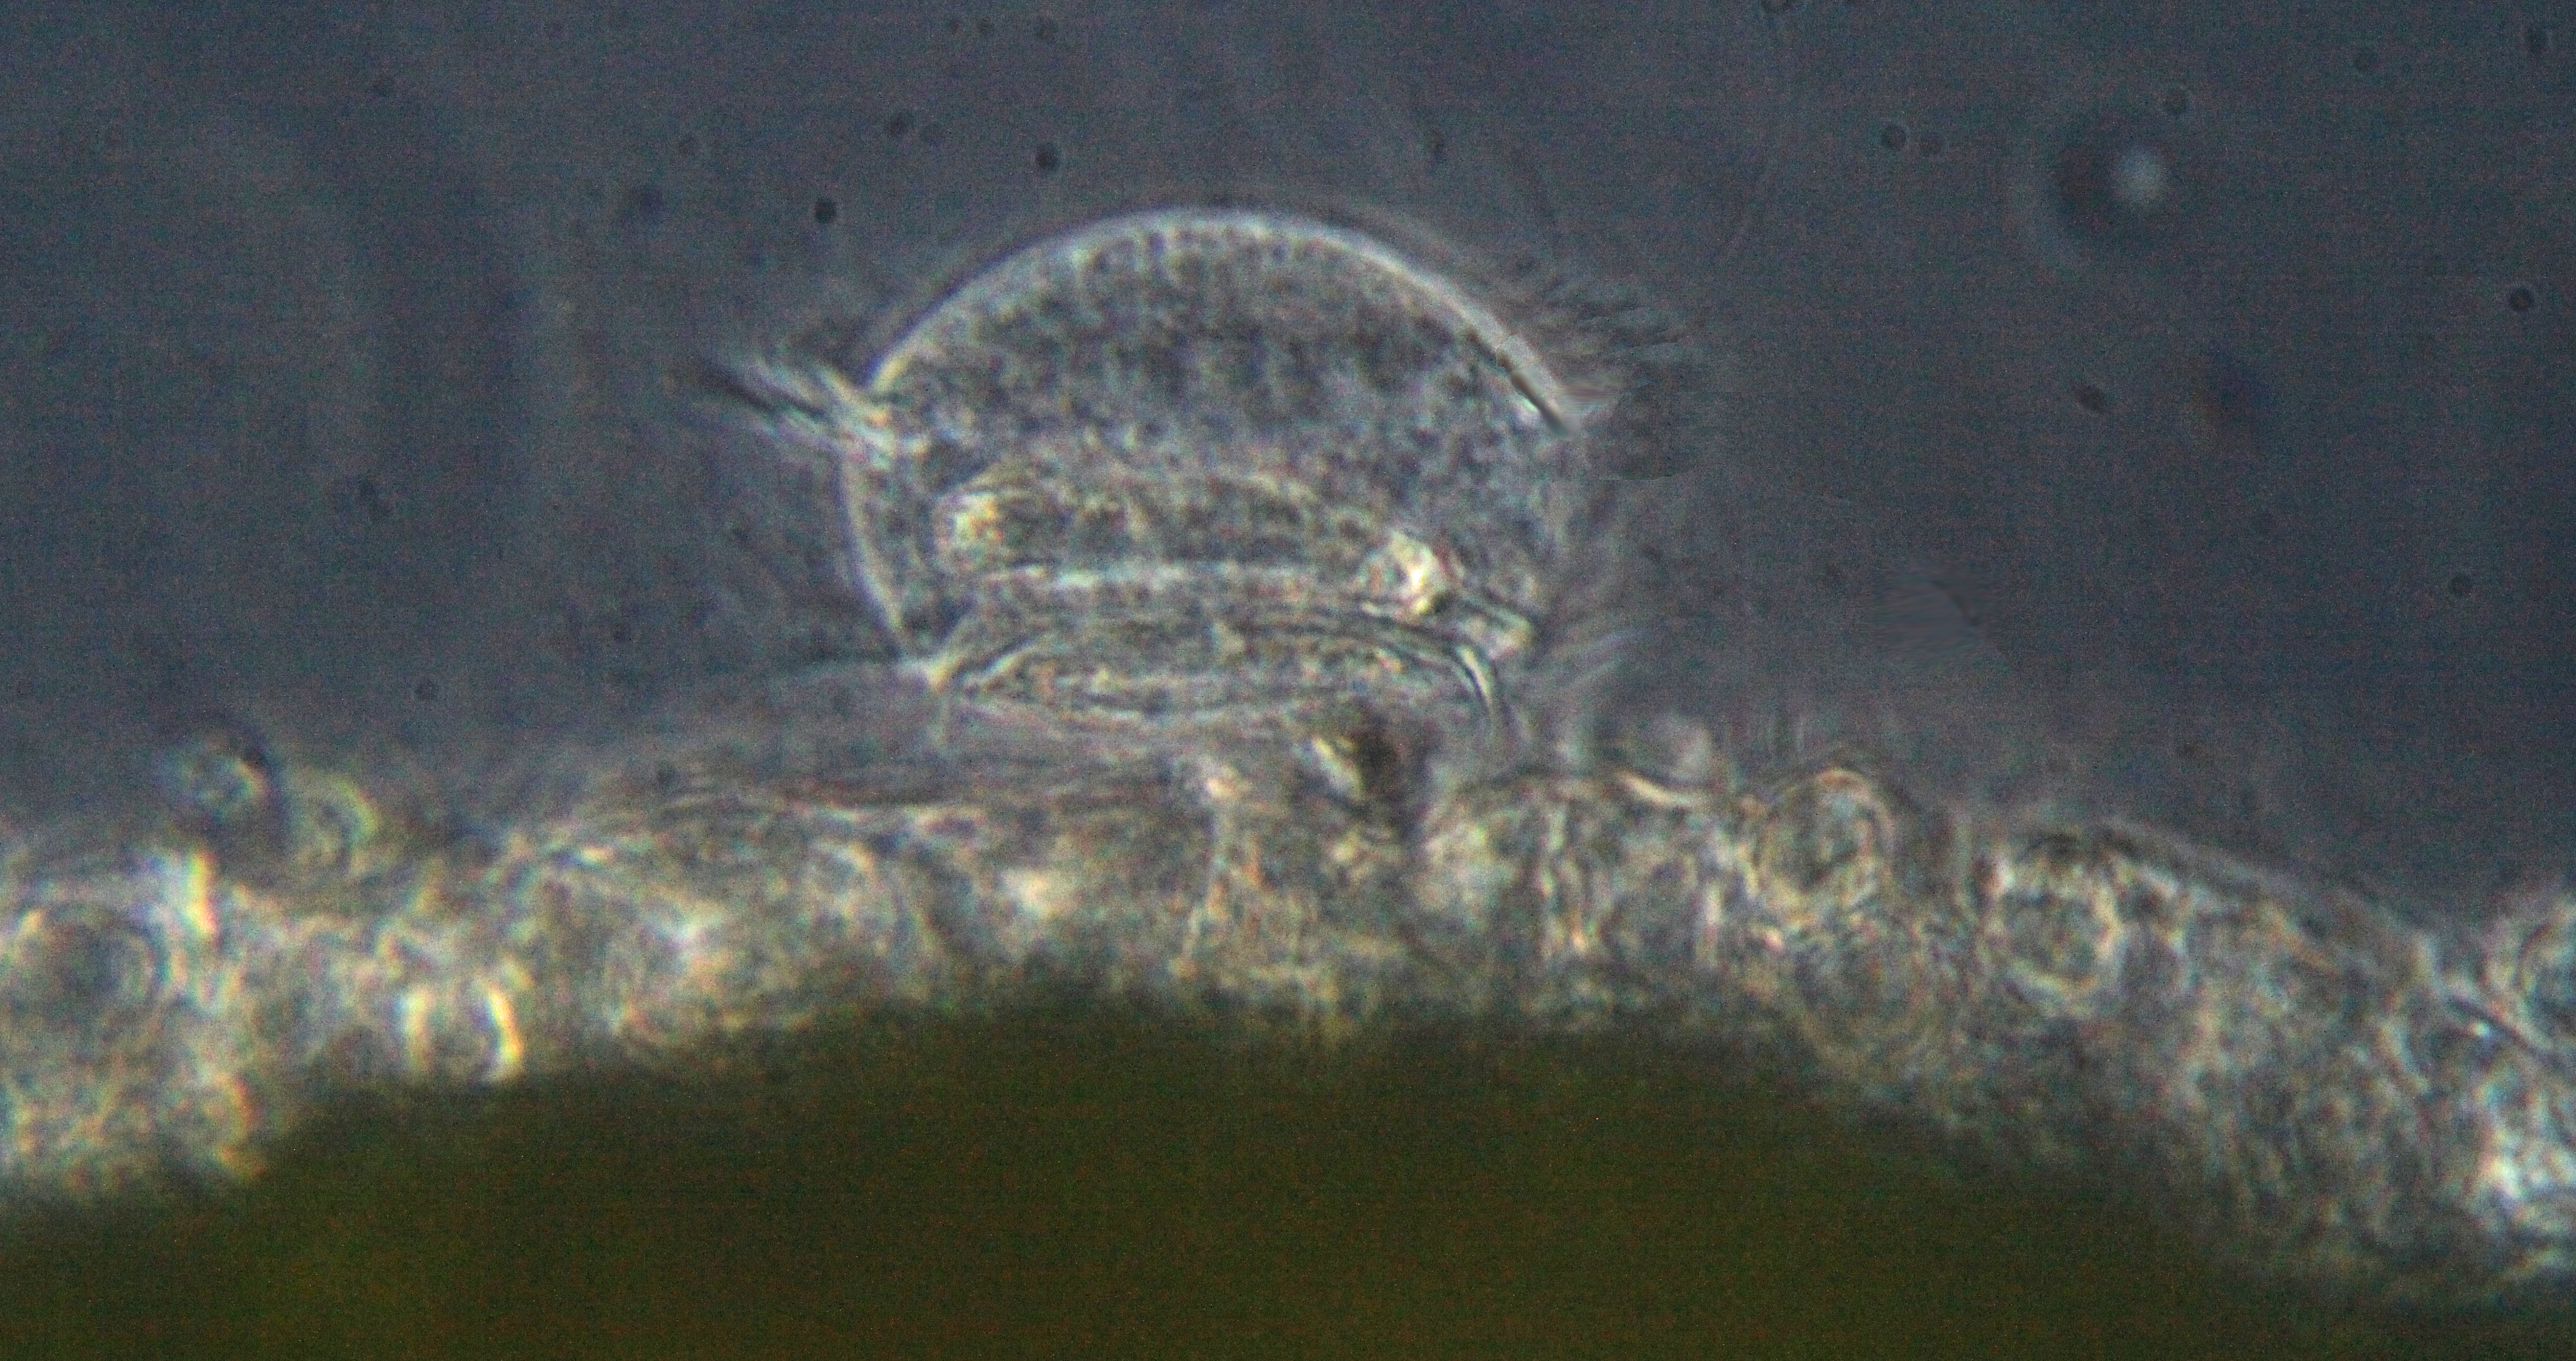 Trichodina pediculus, cilié commensal des hydres vertes